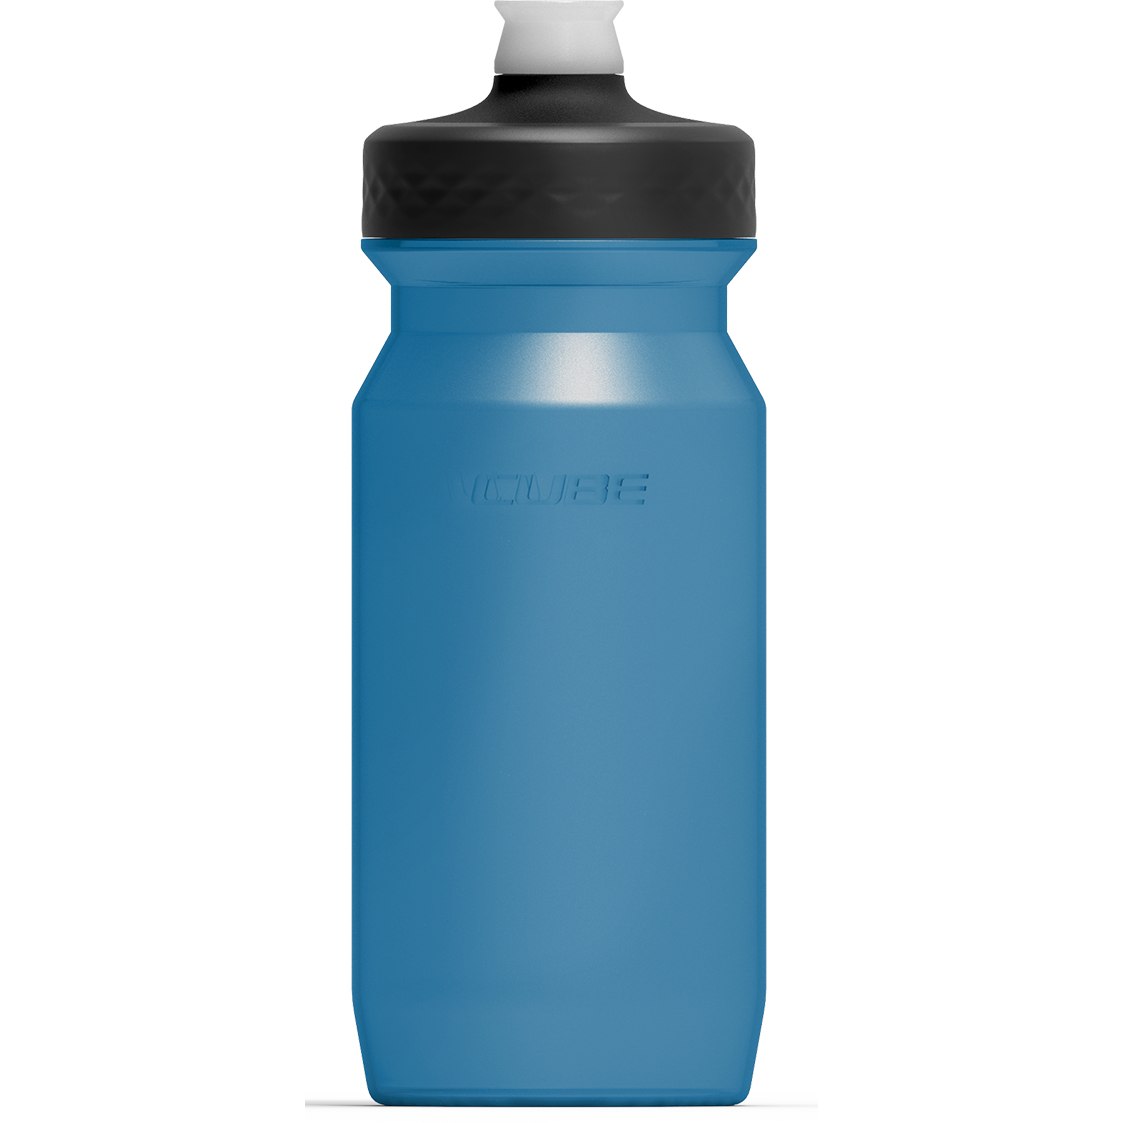 Produktbild von CUBE Trinkflasche Grip 0.5l - blue